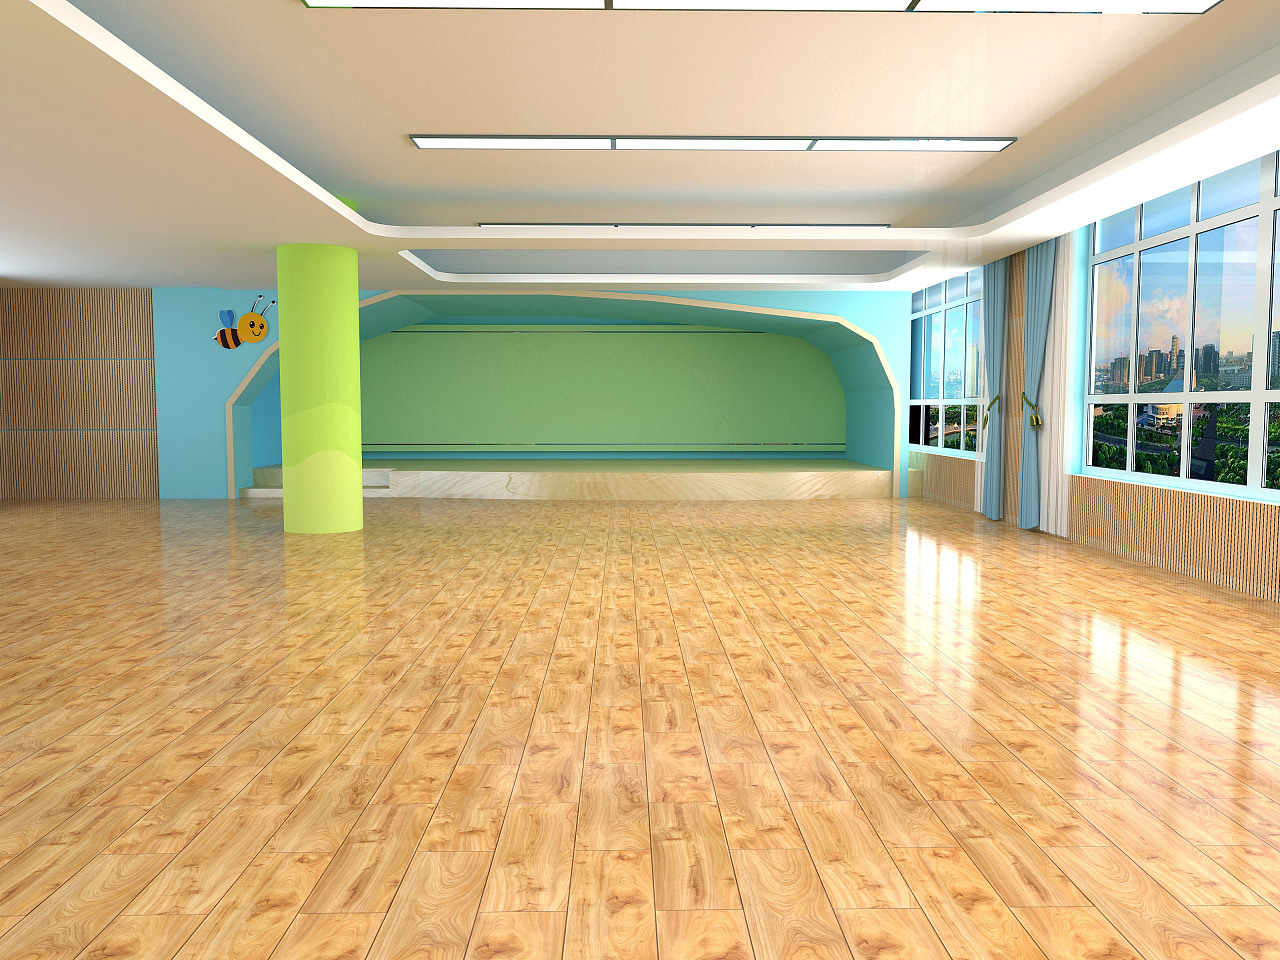 郫都区青藤希顿公学幼儿园工程顺利完工,幼儿园pvc地板胶,青藤希顿公学幼儿园,幼儿园工程案例 - PVC 地板 - 成都办公地毯|成都地毯|成都地毯批发|成都办公室地毯|成都pvc地板胶